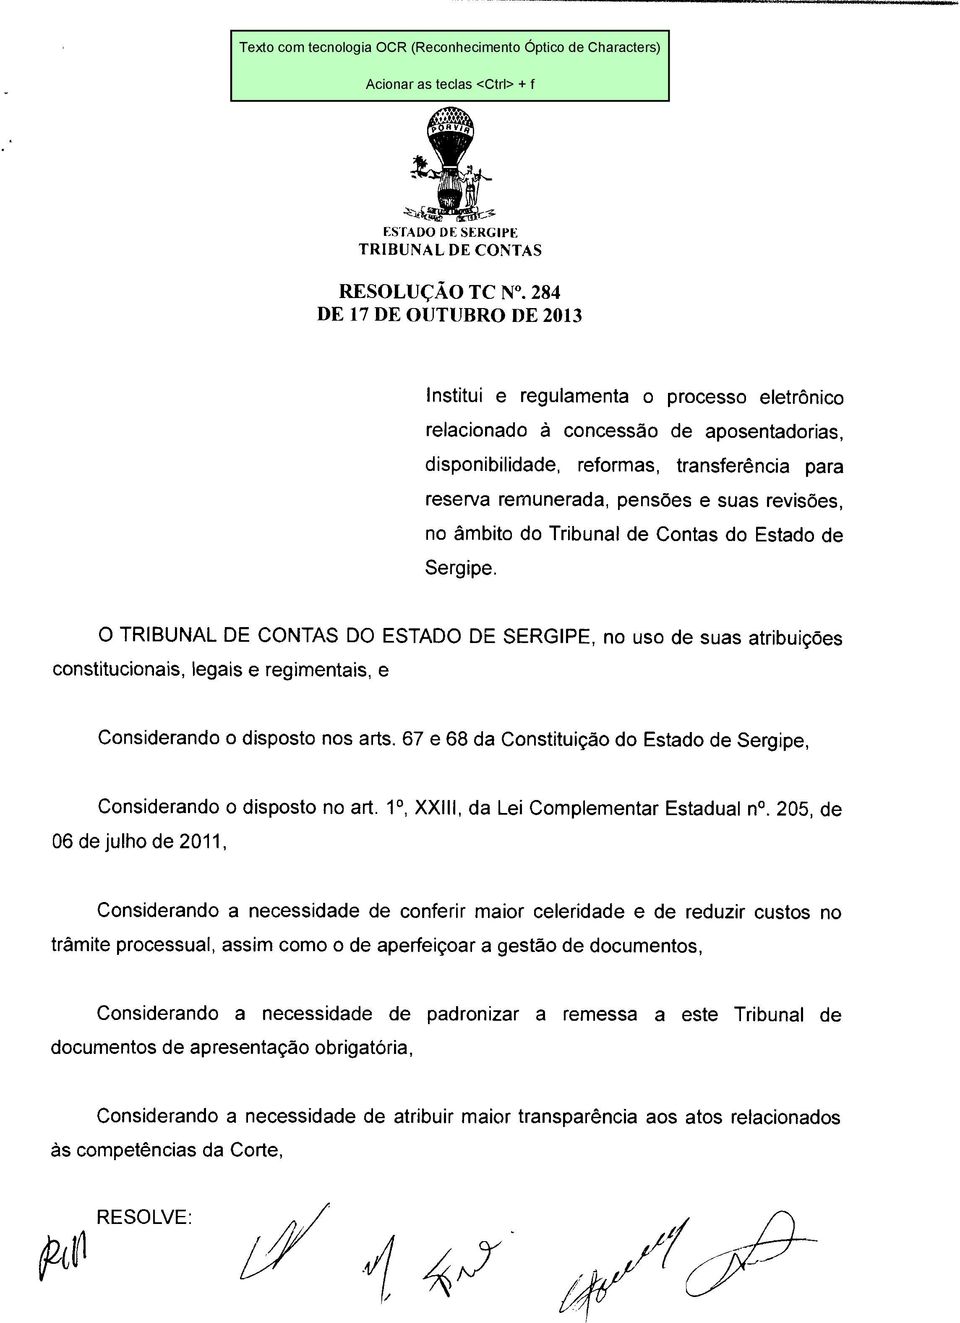 67 e 68 da Constituição do Estado de Sergipe, Considerando o disposto no art. 1o, XXIII, da Lei Complementar Estadual n.